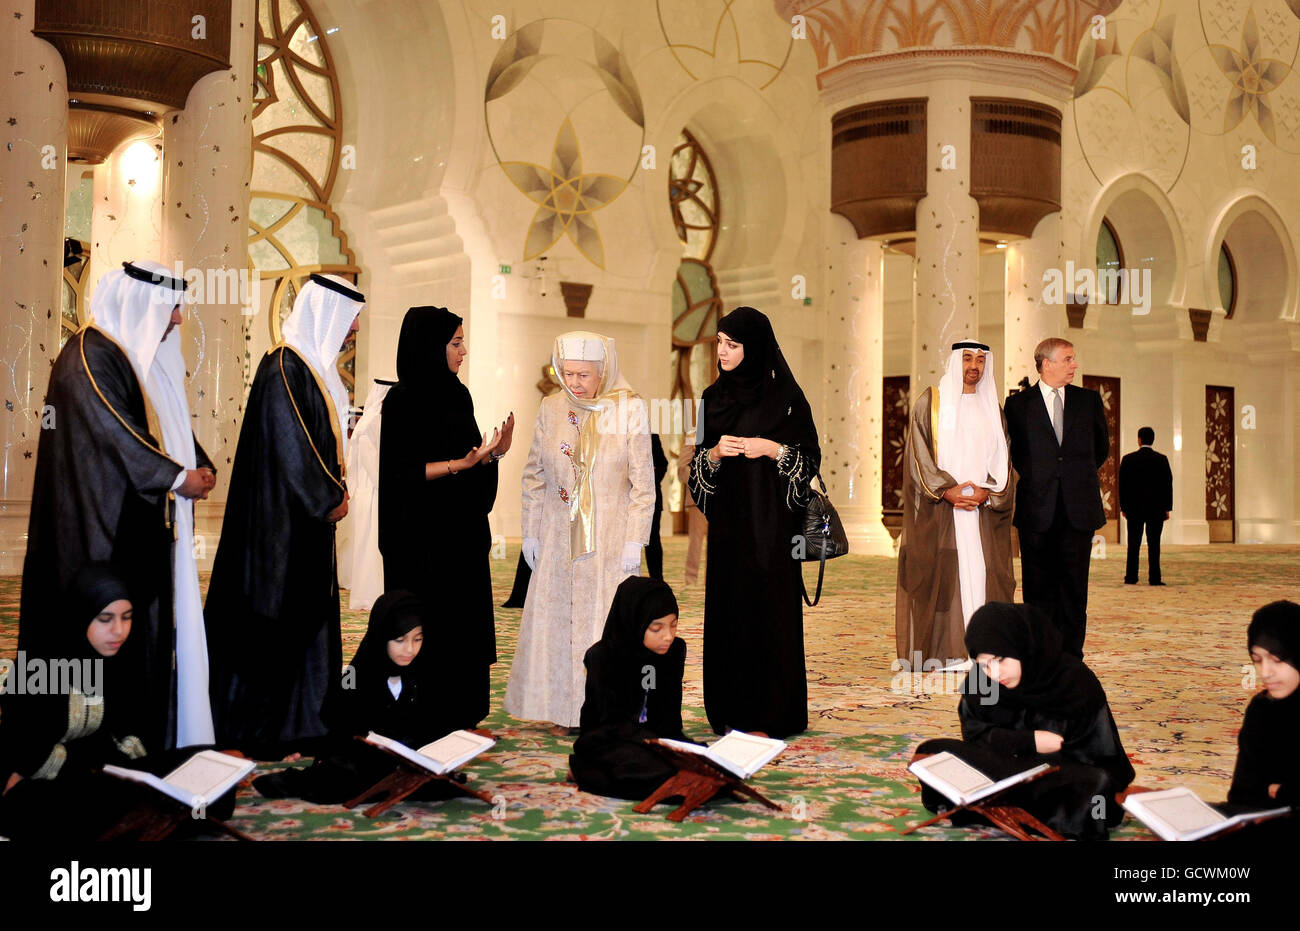 La reine Elizabeth II de Grande-Bretagne (quatrième à gauche), accompagnée du duc d'York (première à droite), regarde les jeunes filles lire le Saint Coran dans la Grande Mosquée Sheikh Zayed à Abu Dhabi, dans le cadre d'une visite d'État de cinq jours dans le golfe. Banque D'Images